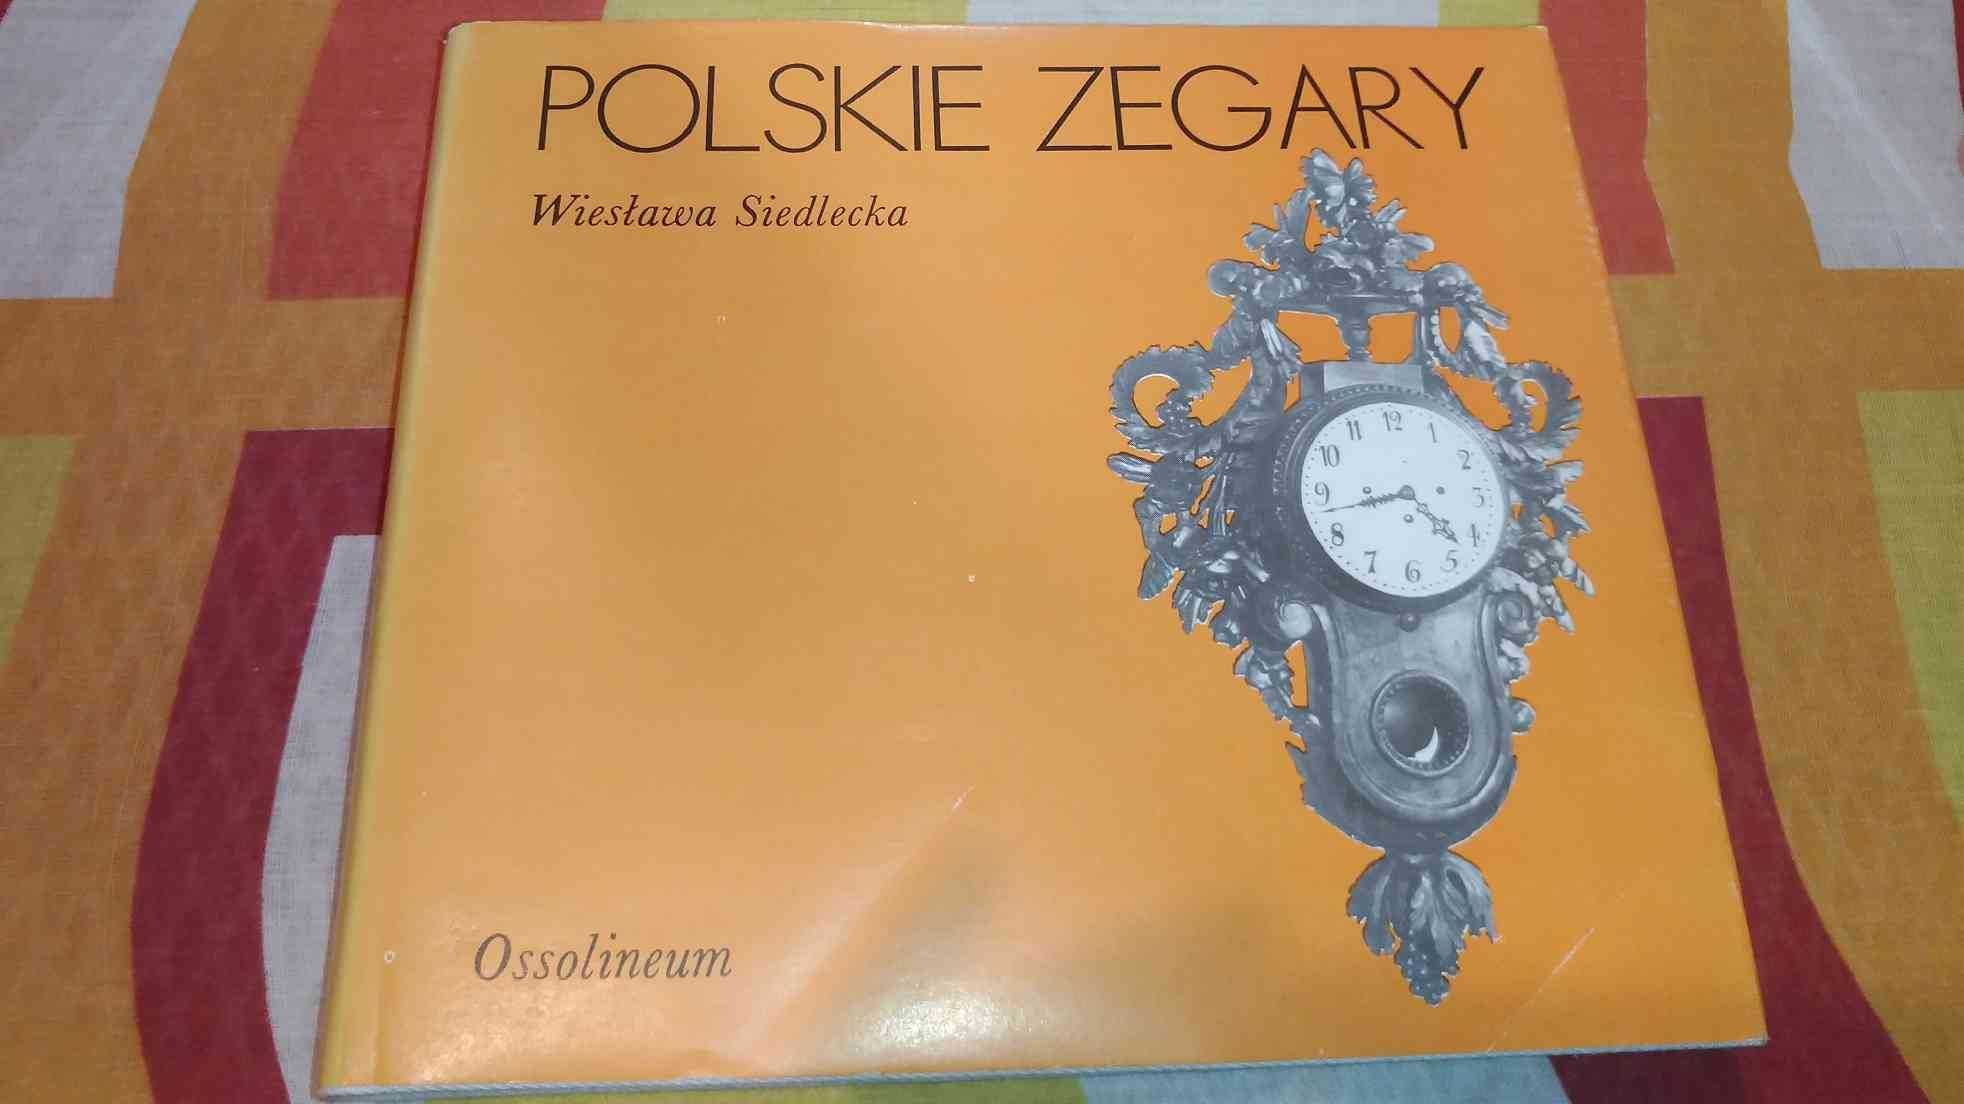 Polskie Zegary
Wiesława Siedlecka
Ossolineum